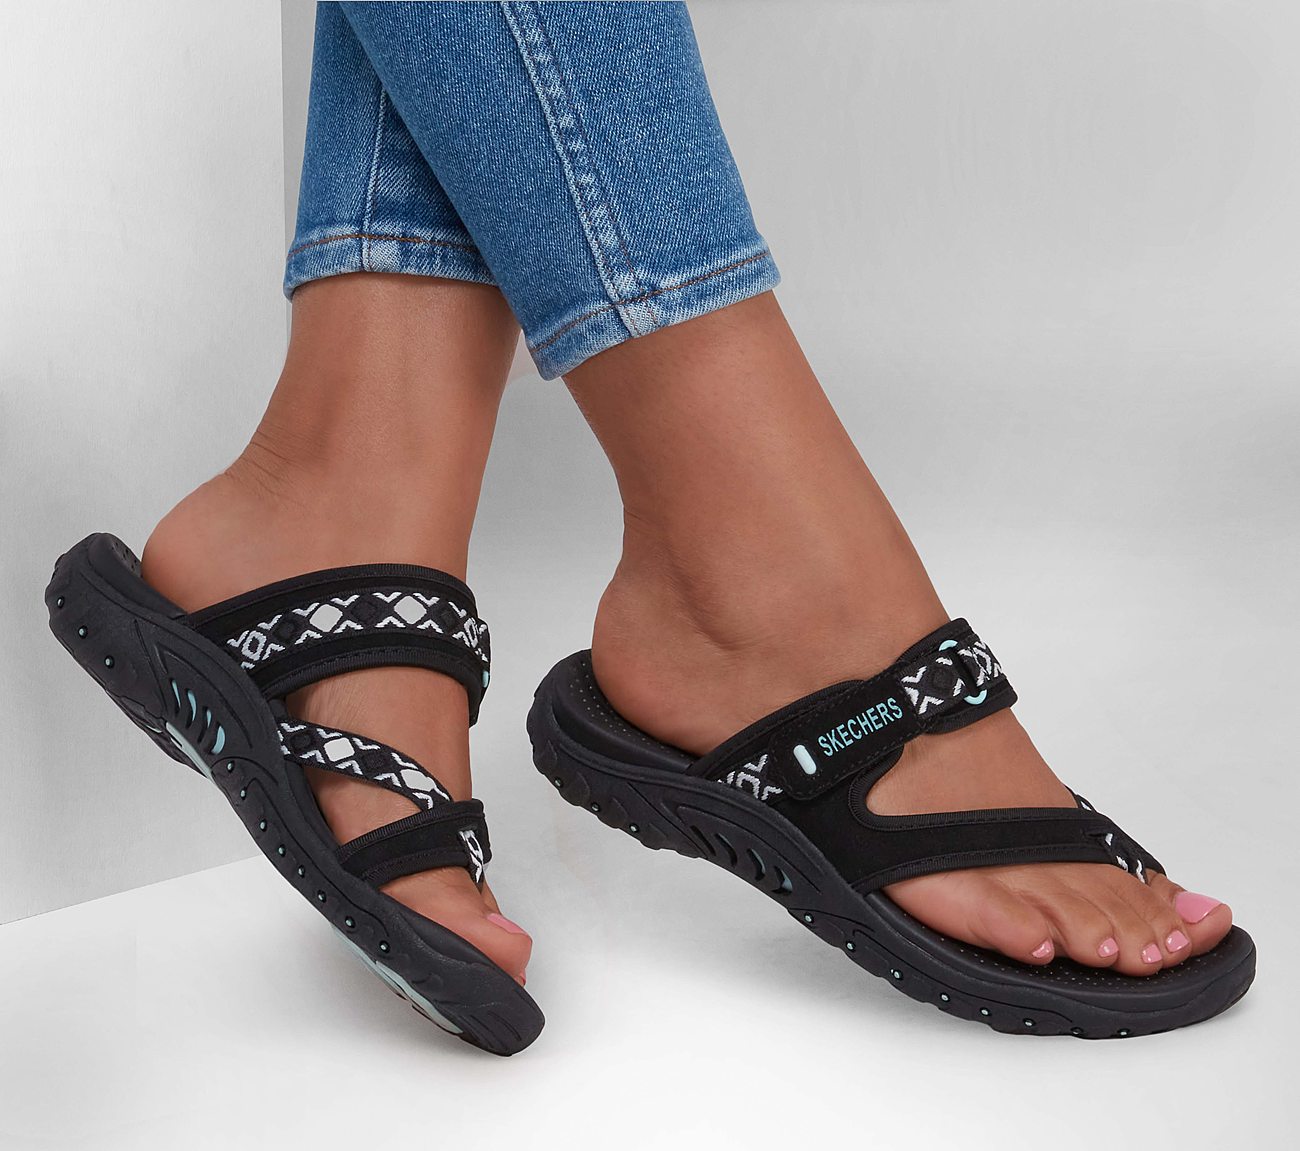 skechers outdoor lifestyle sandals 